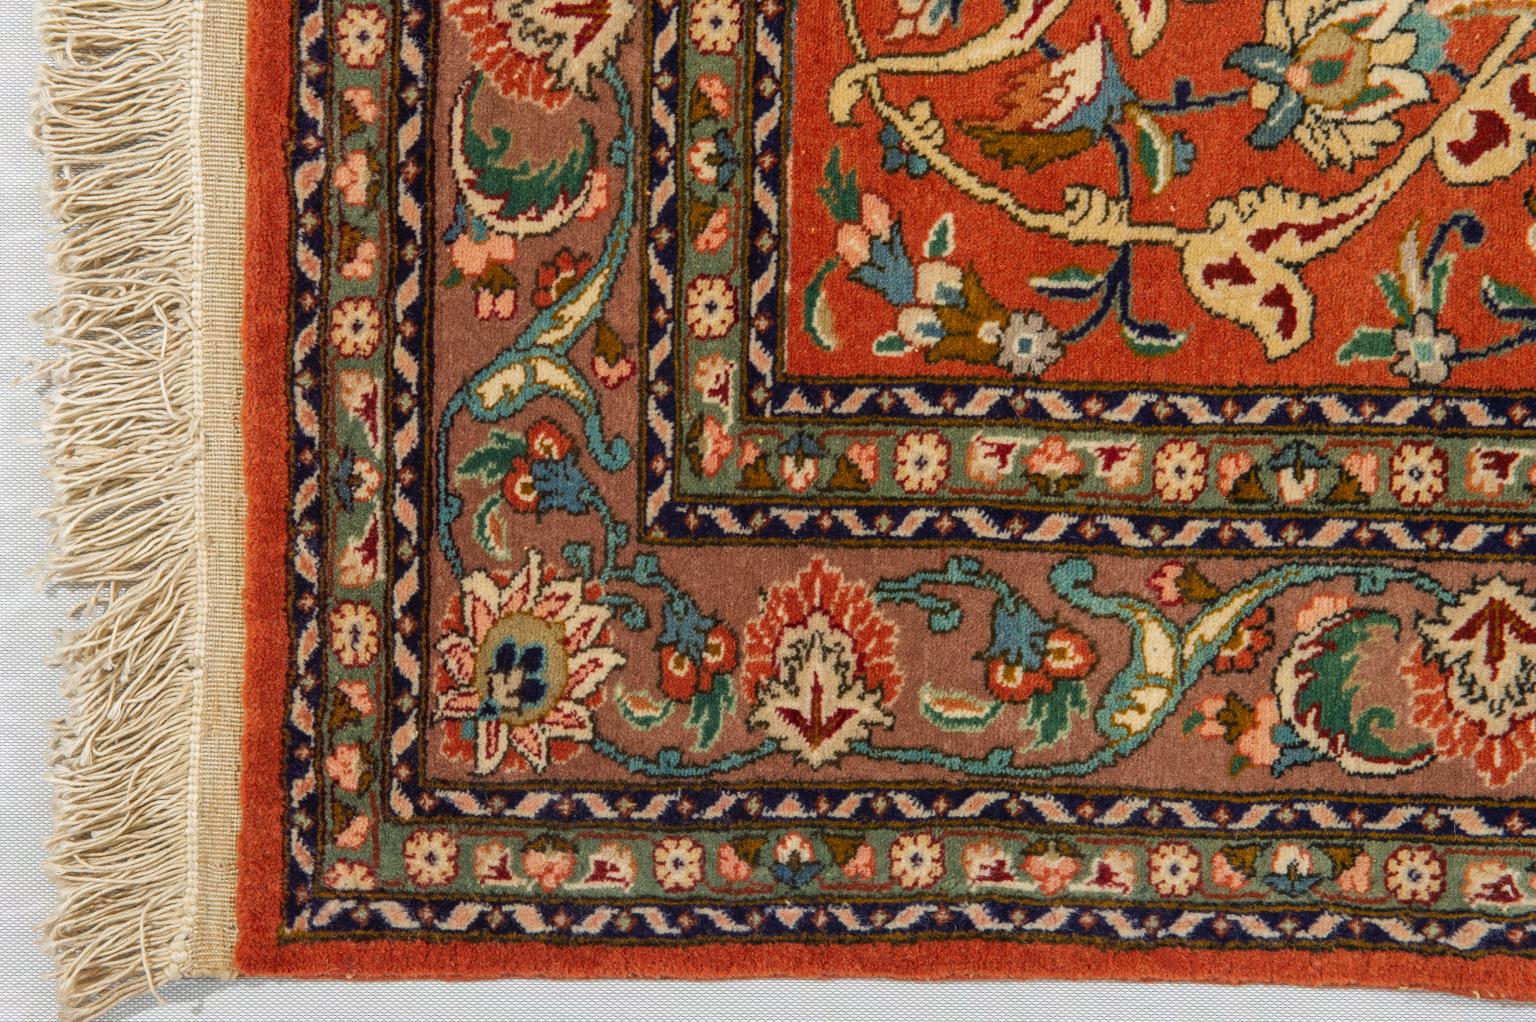 Hand-Knotted Unique Specimen of a Vintage Oriental Carpet For Sale